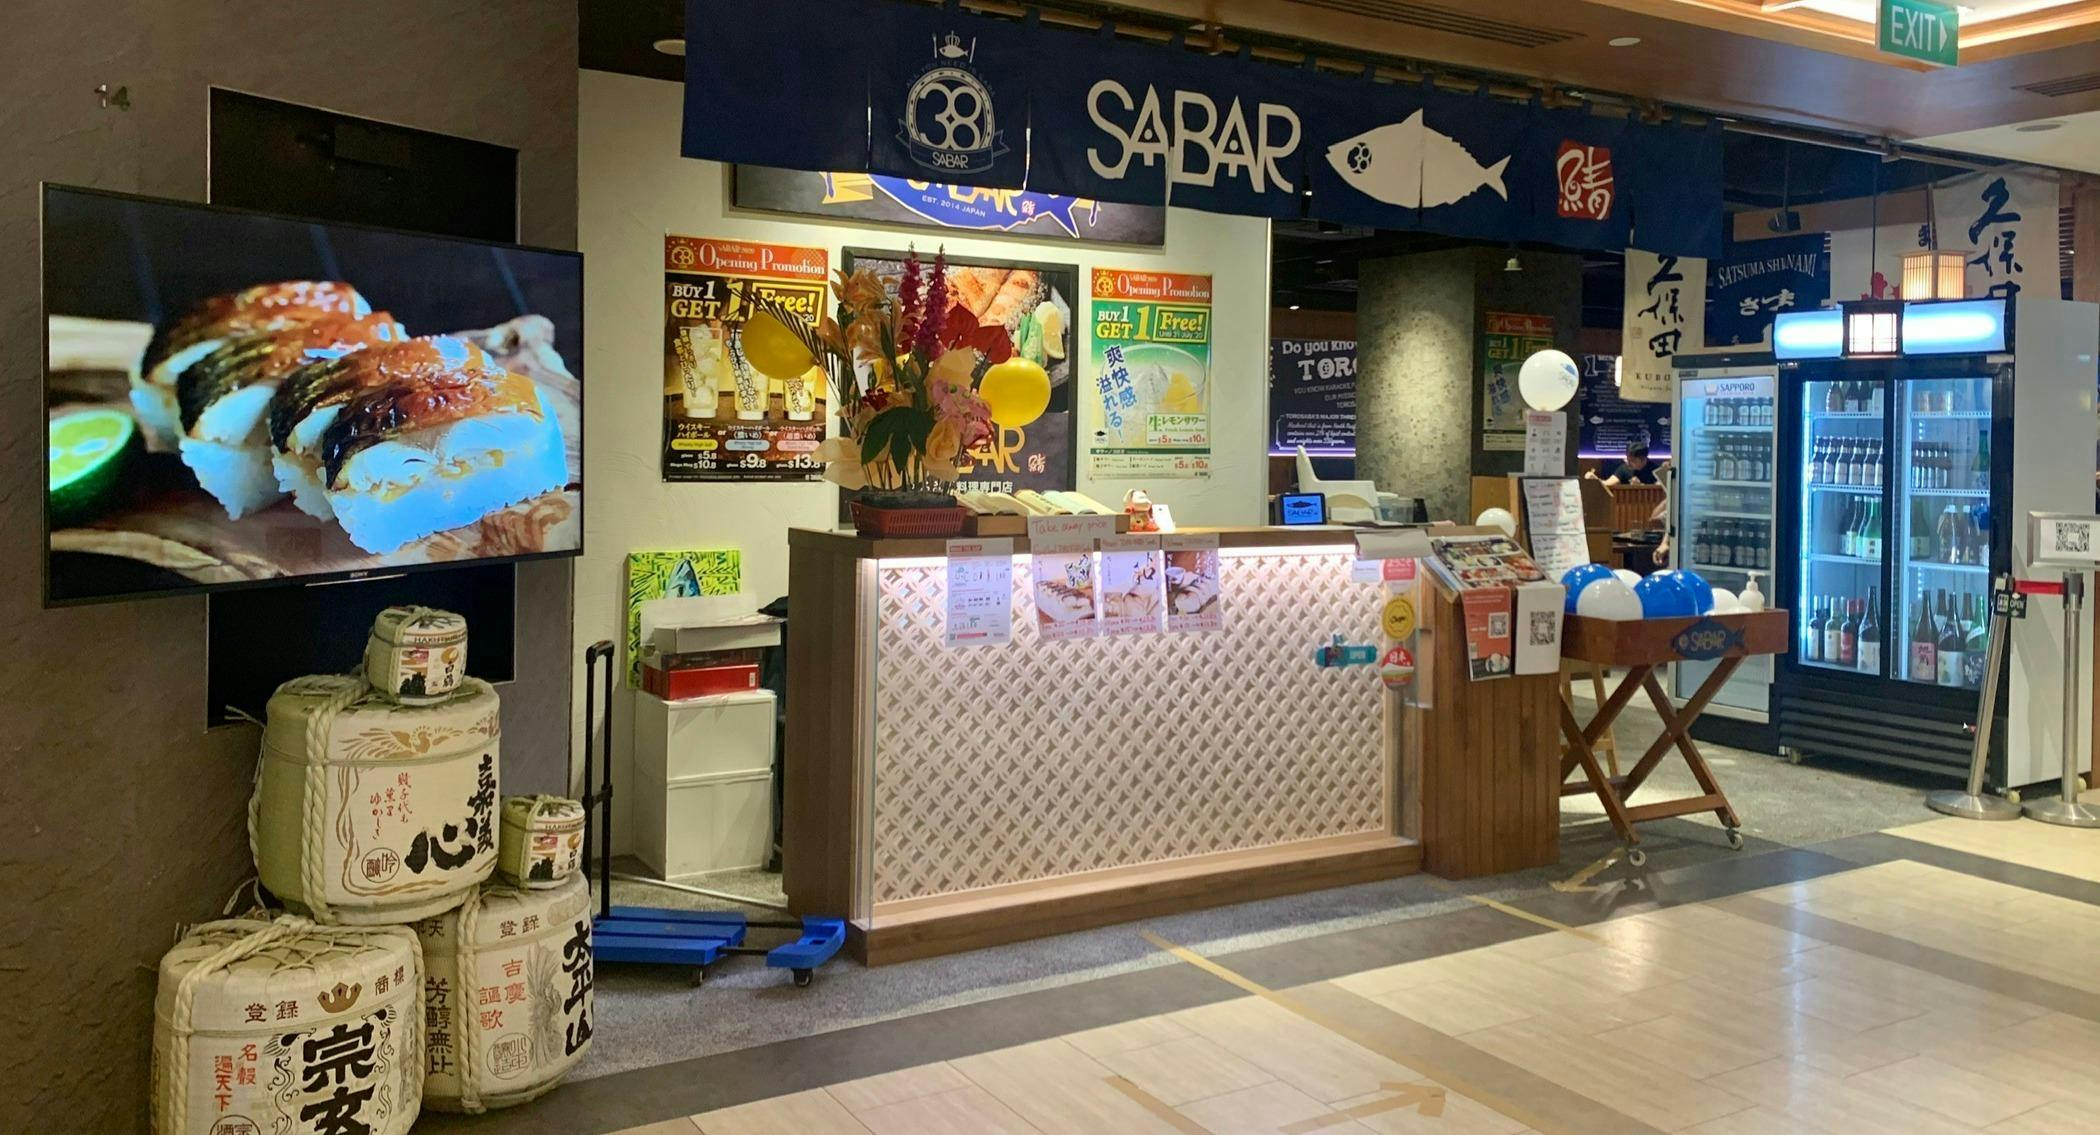 Photo of restaurant Sabar - 100AM in Tanjong Pagar, 新加坡